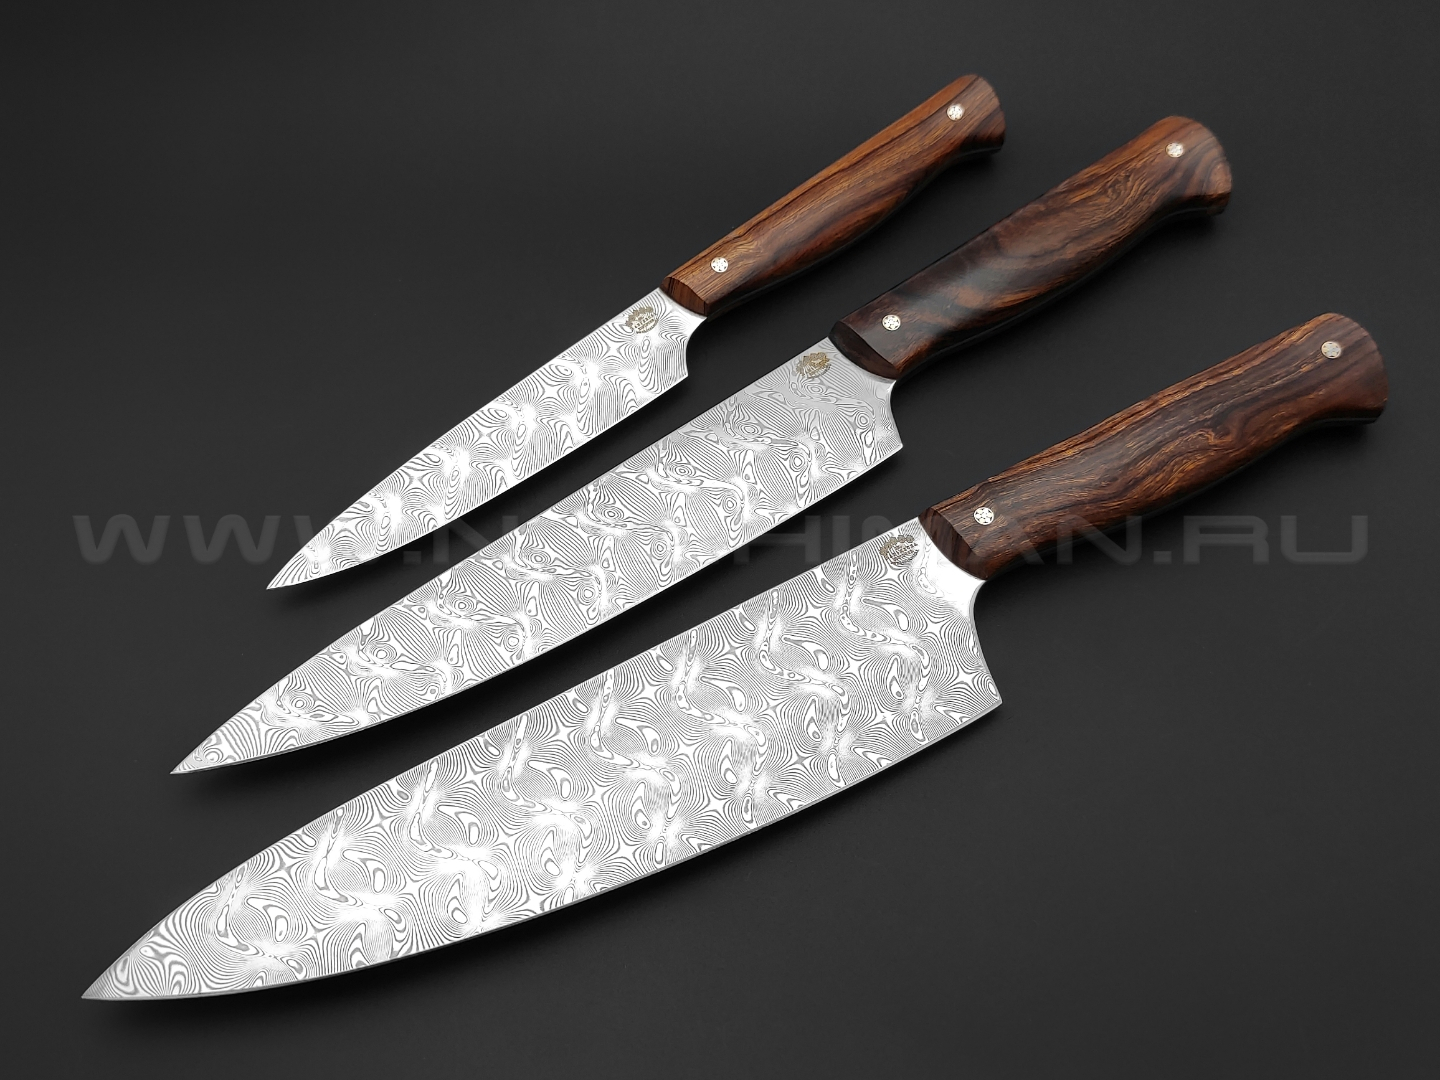 Набор из 3 кухонных ножей, нержавеющая дамасская сталь, рукоять Ironwood (Товарищество Завьялова)